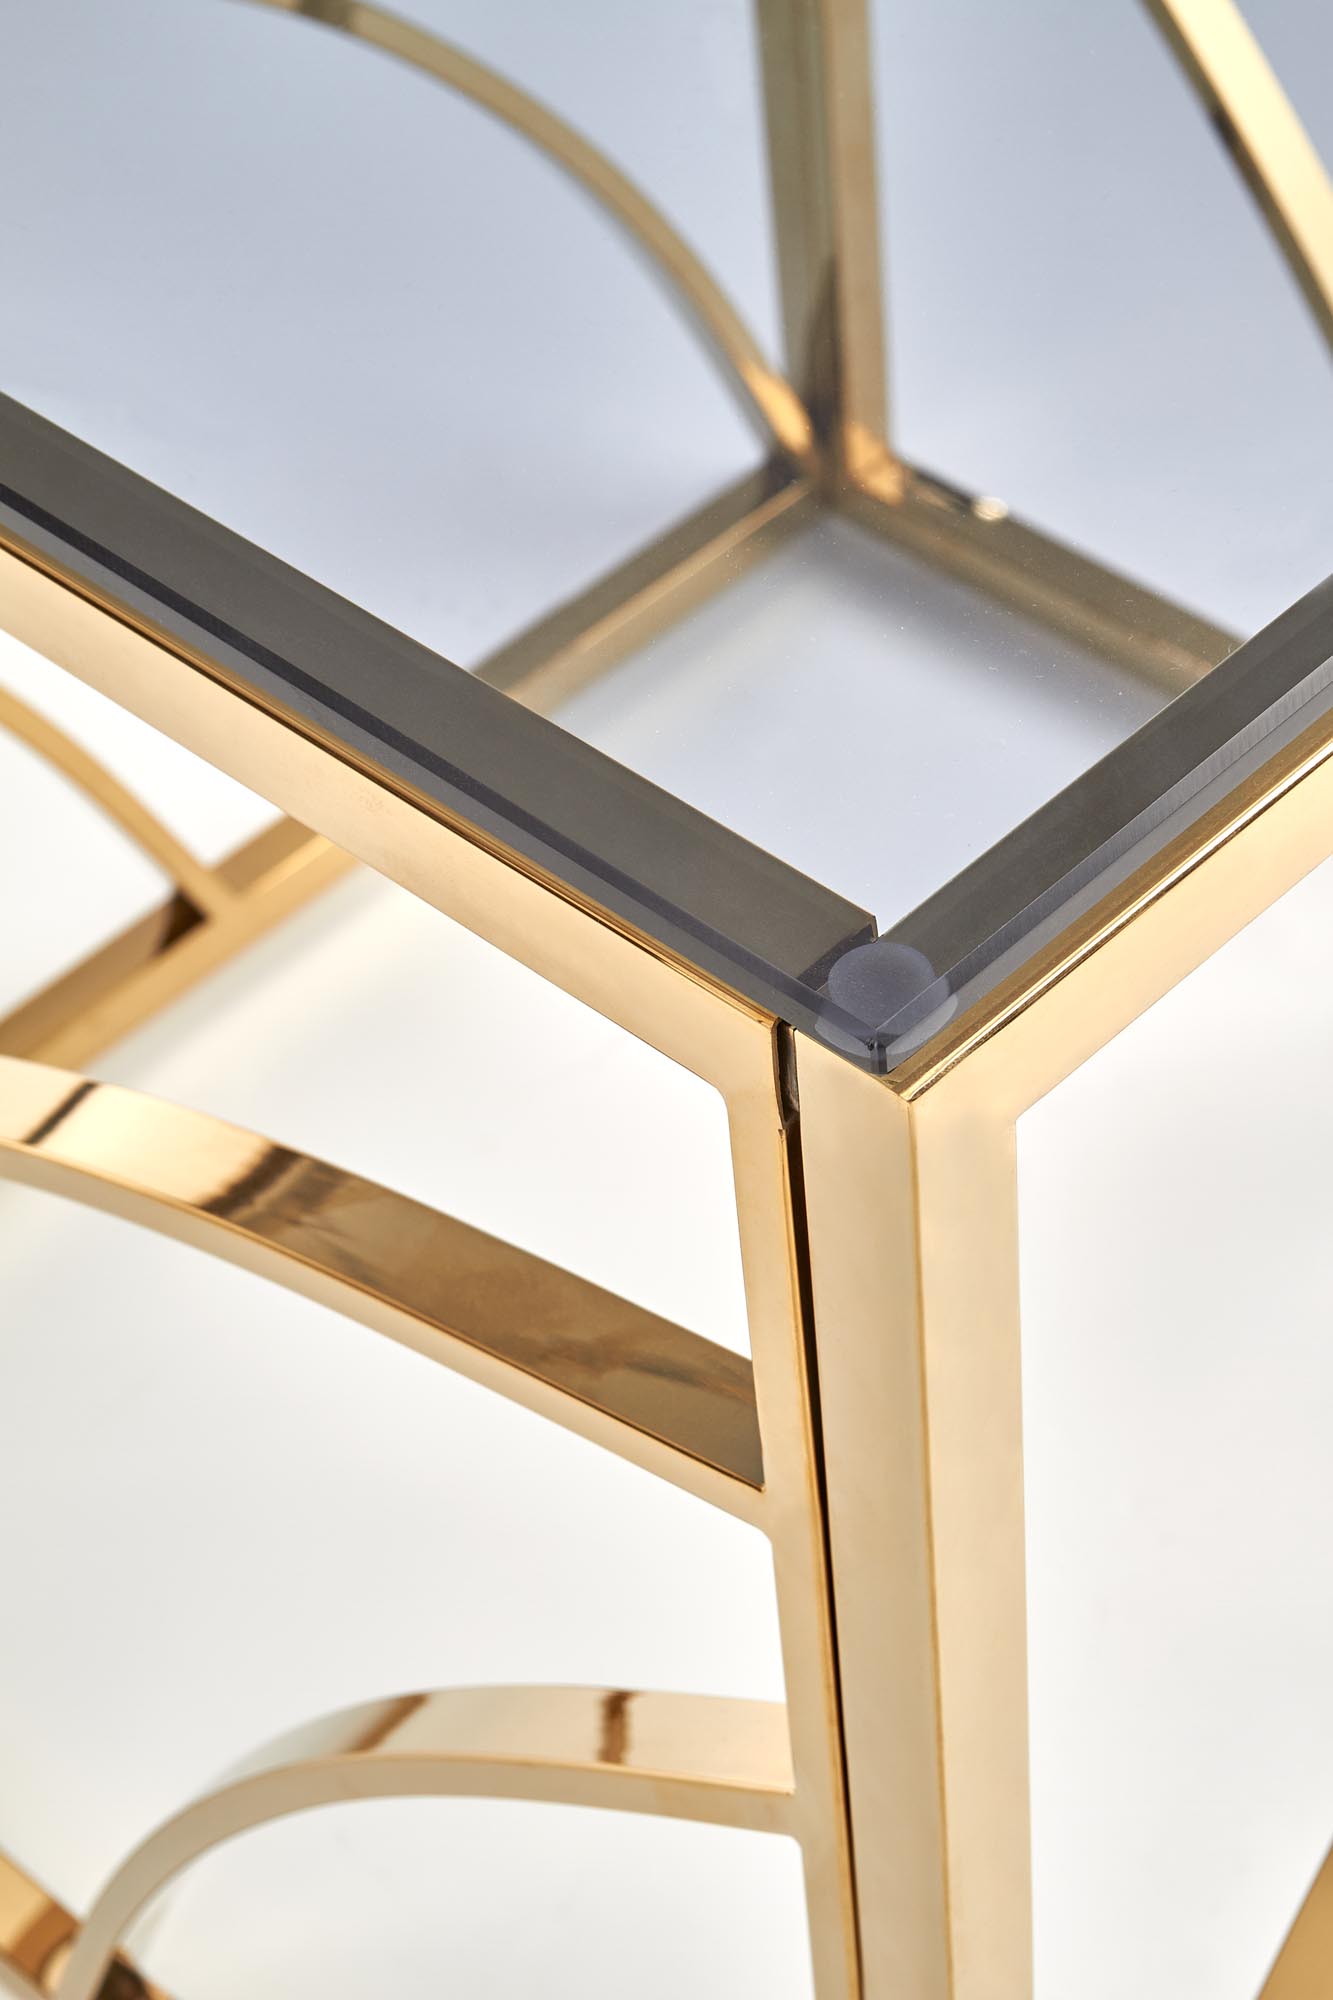 Konferenční stolek krychle Universe - zlatá / kouřové sklo universe Čtverec Konferenční stolek, Rošt - Žlutý, Sklo - kouřový